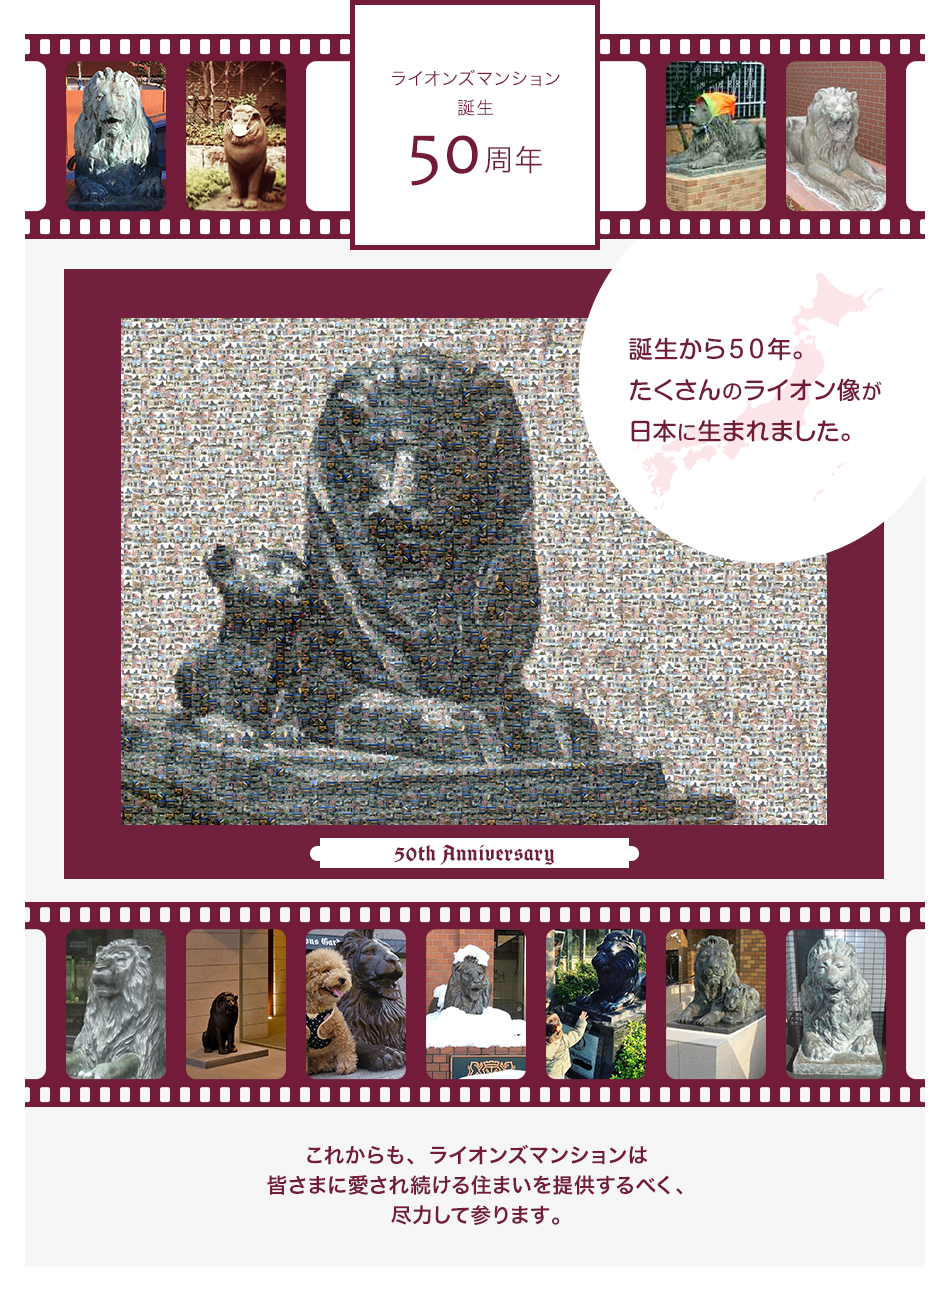 愛され続けて、50年。たくさんのライオン像が日本に生まれました。